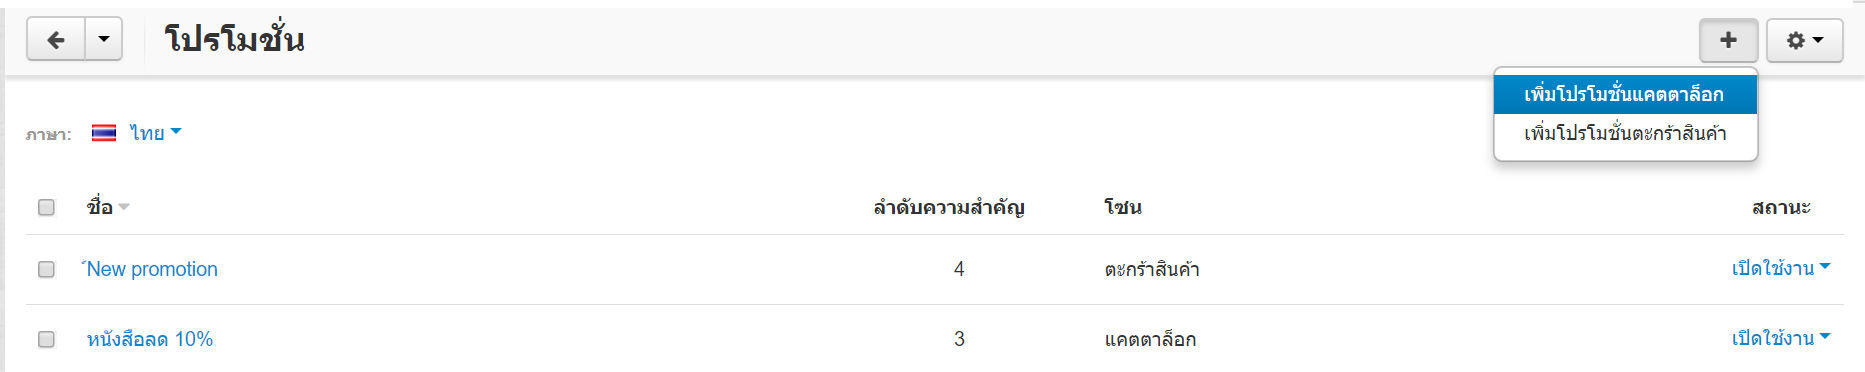 เว็บไซต์สำเร็จรูปไทย - คู่มือร้านออนไลน์ - การจัดการร้านออนไลน์ - สร้างเว็บไซต์ - การตลาด โปรโมชั่น promotion ส่วนลดตามหมวดหมู่ categories discount